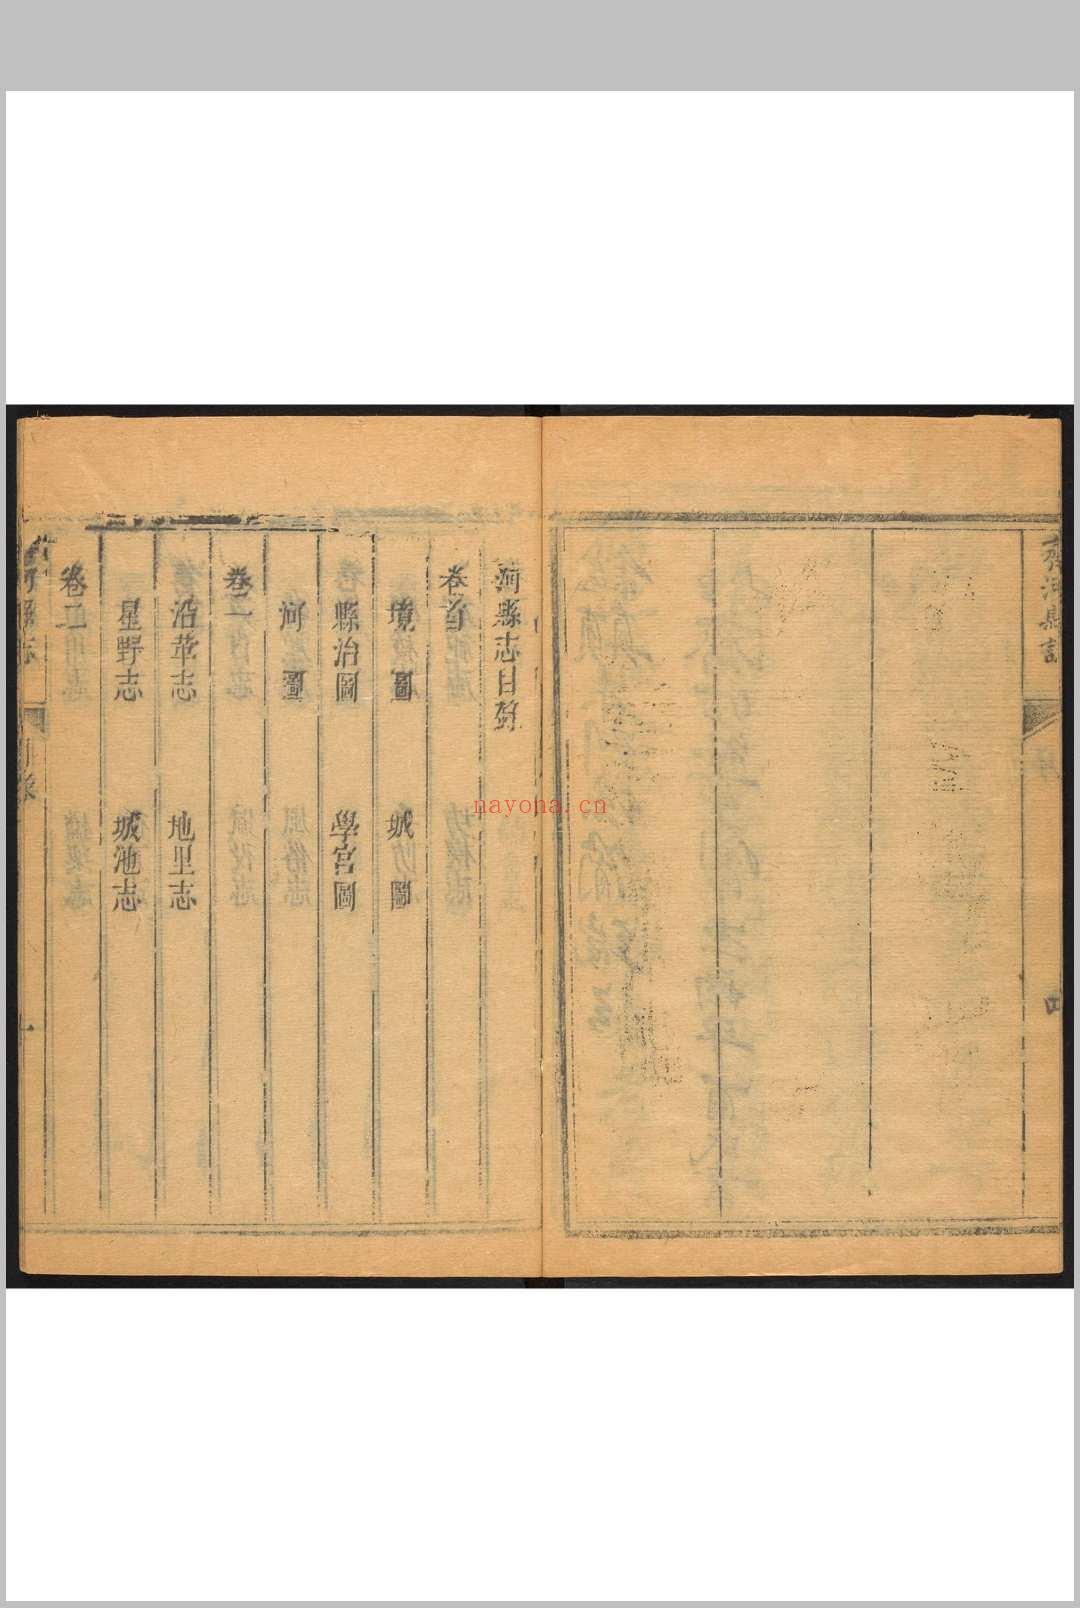 齐河县志  十卷 上官有仪修.清乾隆间, between 1736 and 1795]